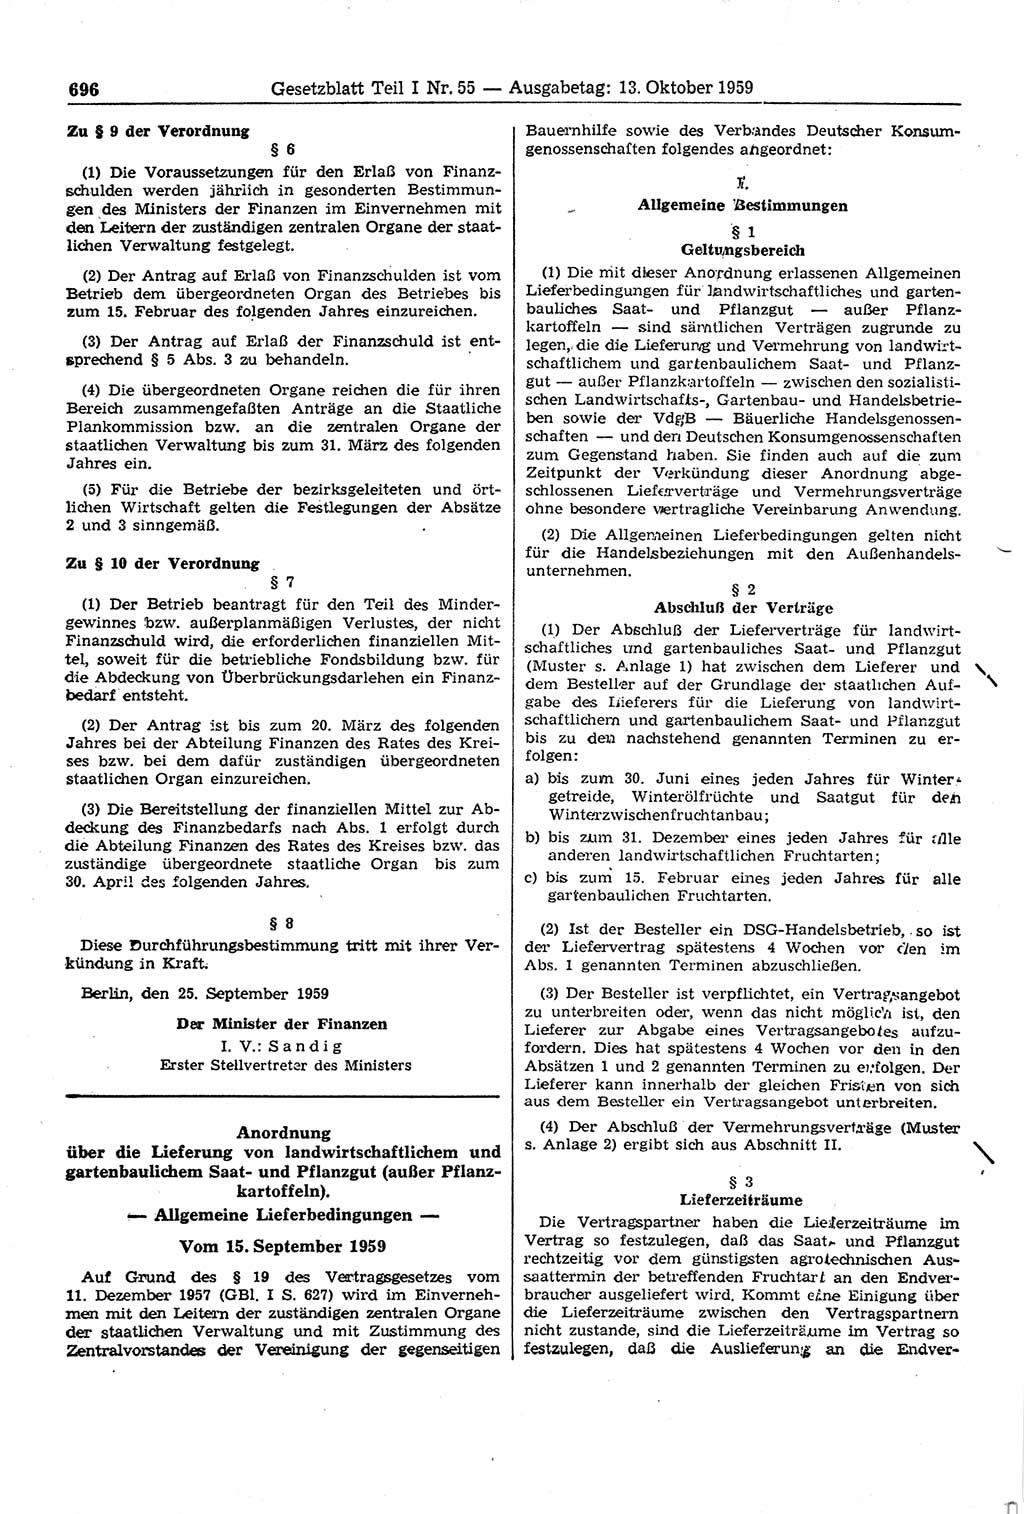 Gesetzblatt (GBl.) der Deutschen Demokratischen Republik (DDR) Teil Ⅰ 1959, Seite 696 (GBl. DDR Ⅰ 1959, S. 696)